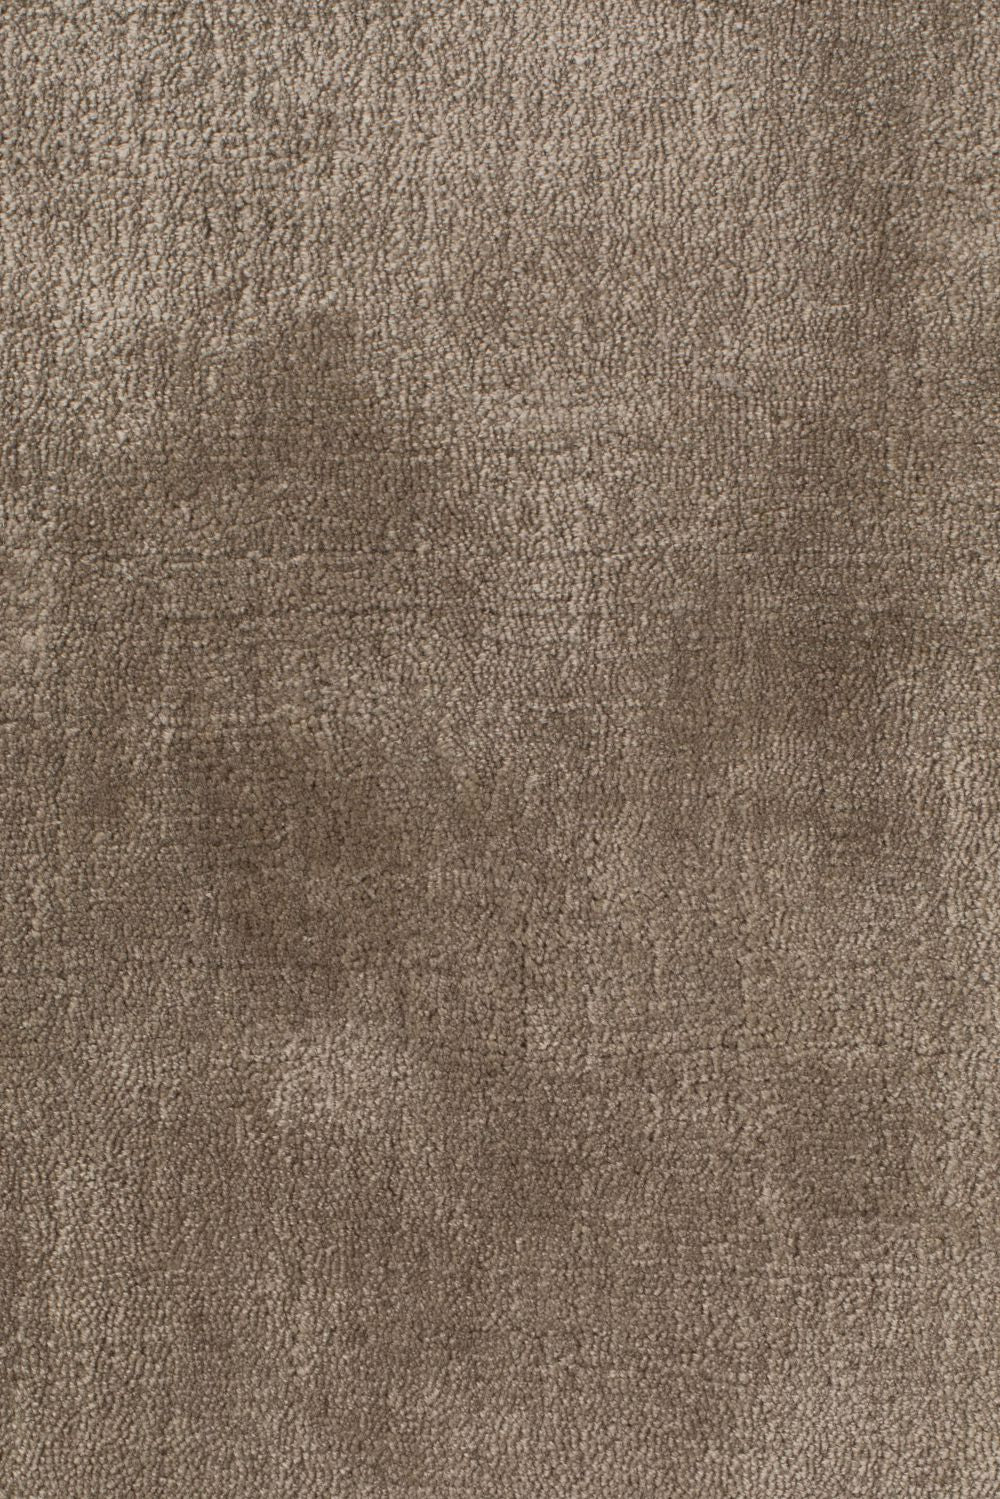  Zuiver-Zuiver Blink Carpet 170X240 Sand-White, Cream, Beige 33 